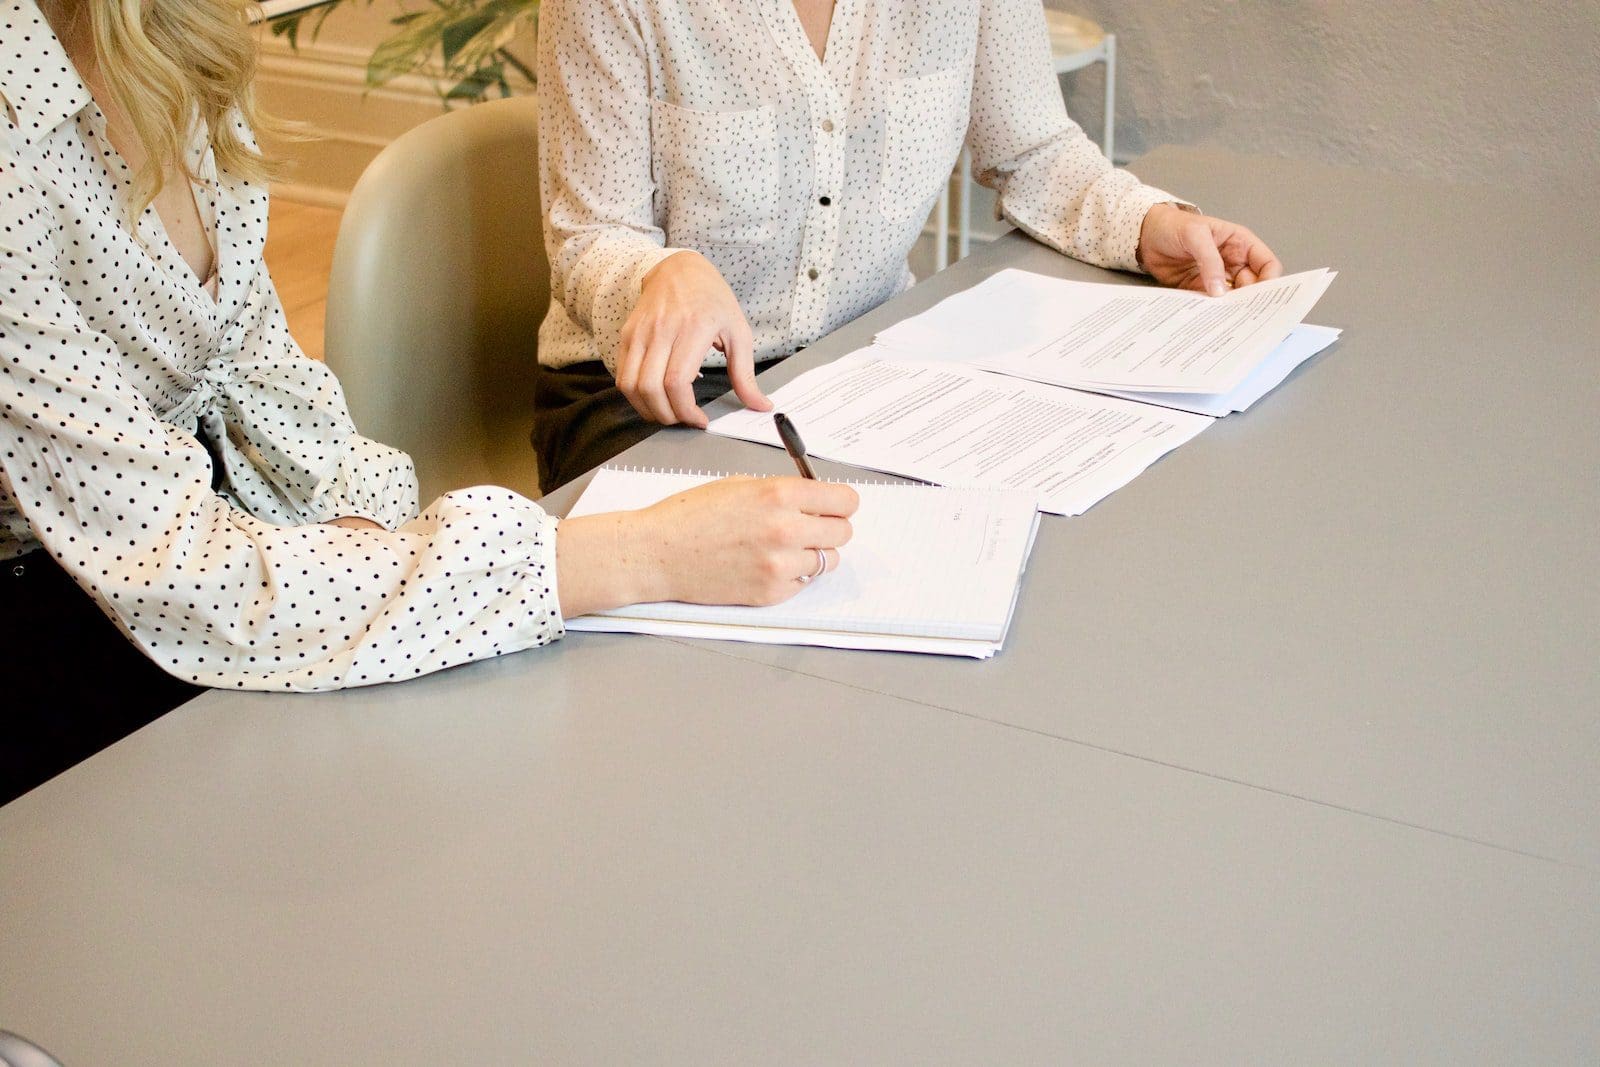 žena podepisování na bílém papíře tiskárny vedle žena se chystá dotknout dokumentů